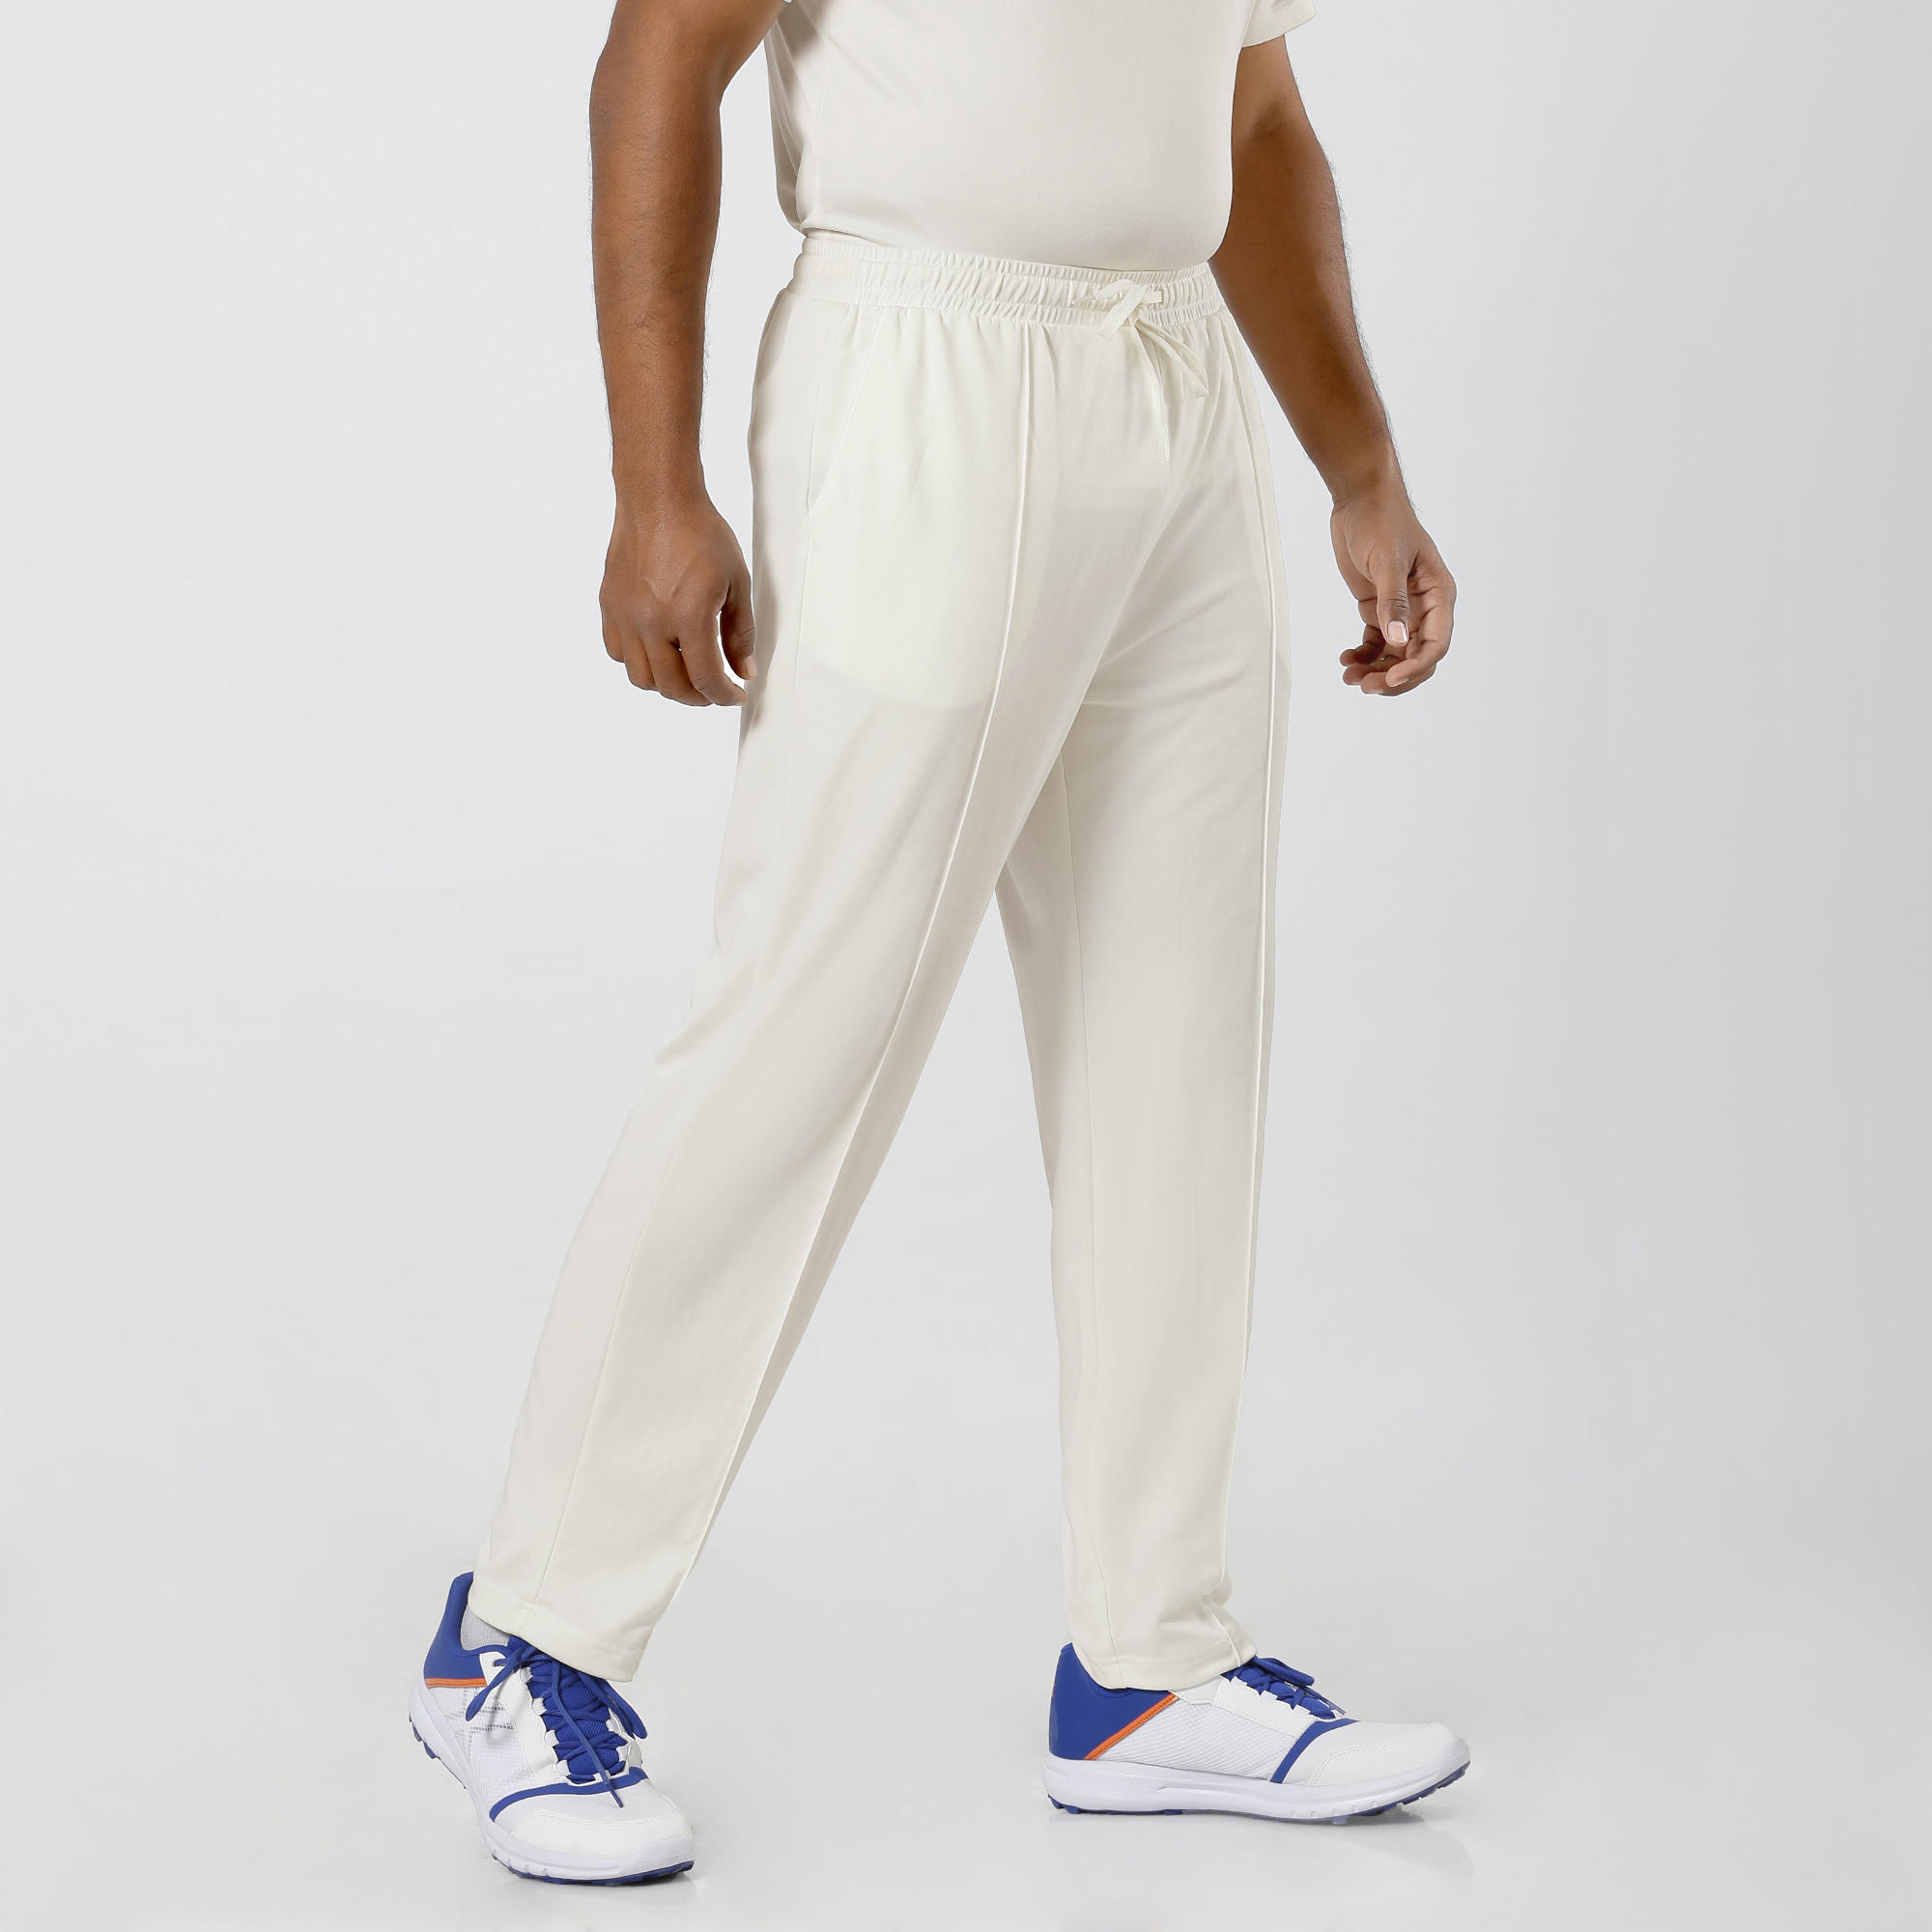 Cricket White Trousers – Prokicksports